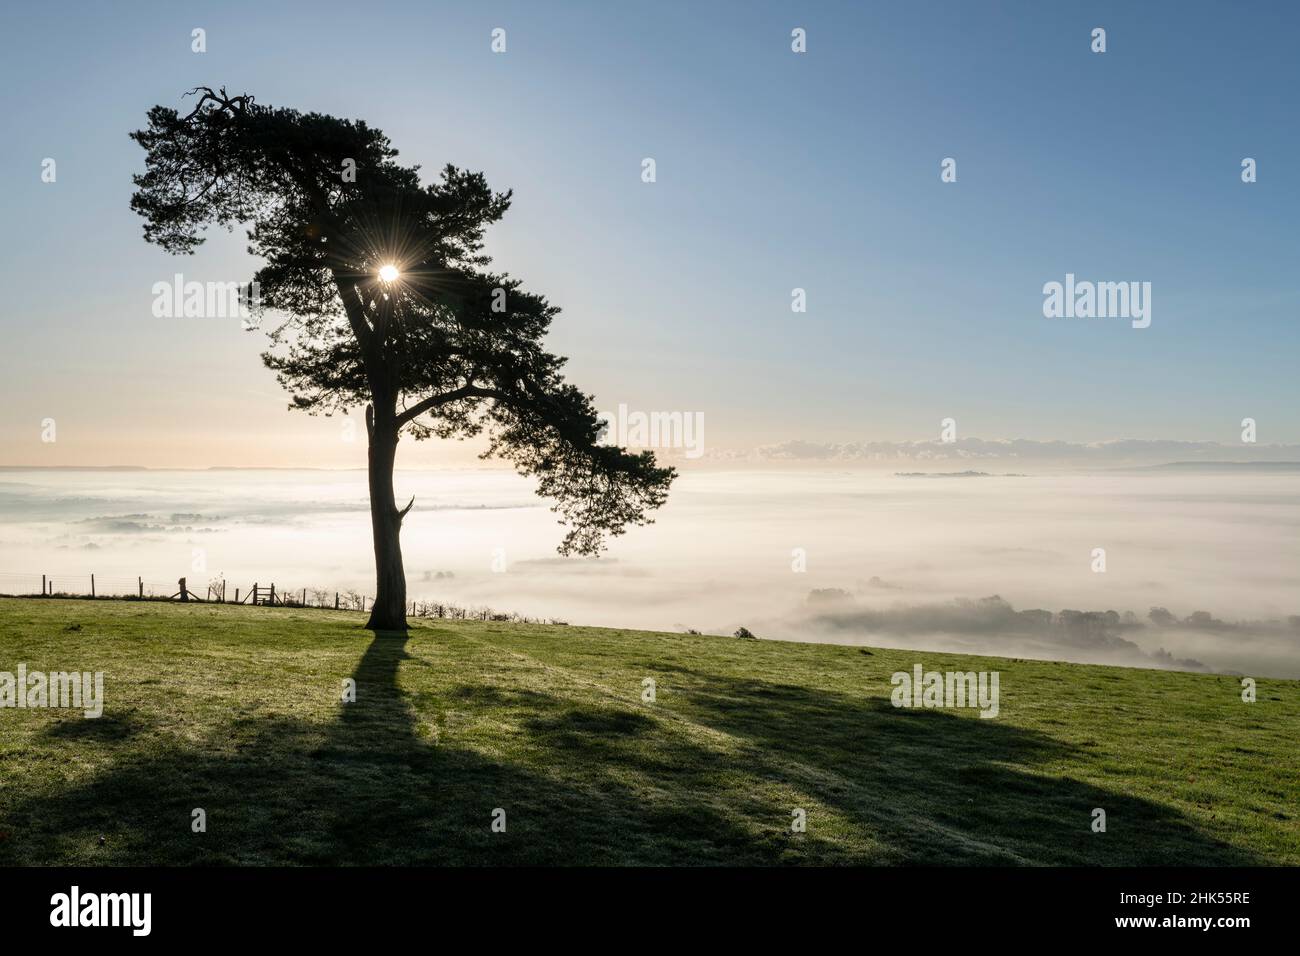 Arbre de sommet de colline de pin solitaire sur une brumeuse, matin d'automne ensoleillé, Devon, Angleterre, Royaume-Uni,Europe Banque D'Images